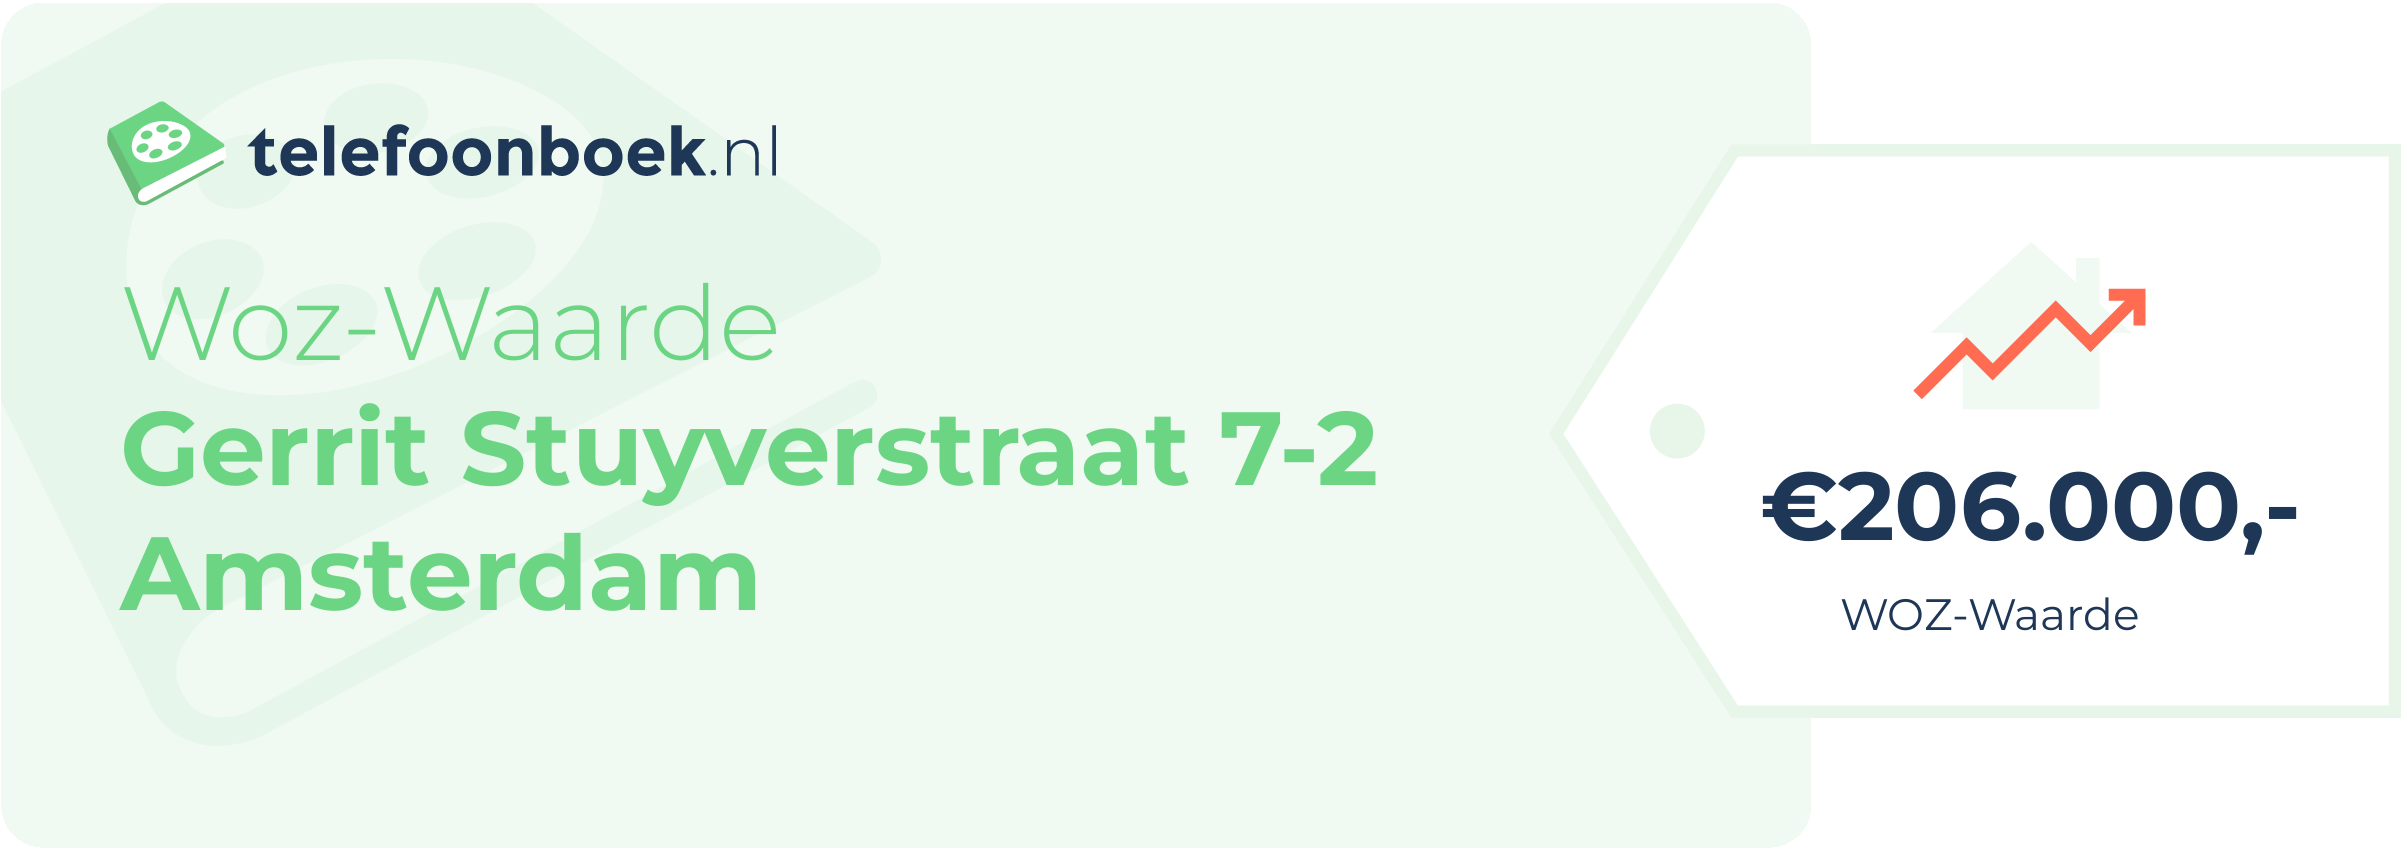 WOZ-waarde Gerrit Stuyverstraat 7-2 Amsterdam